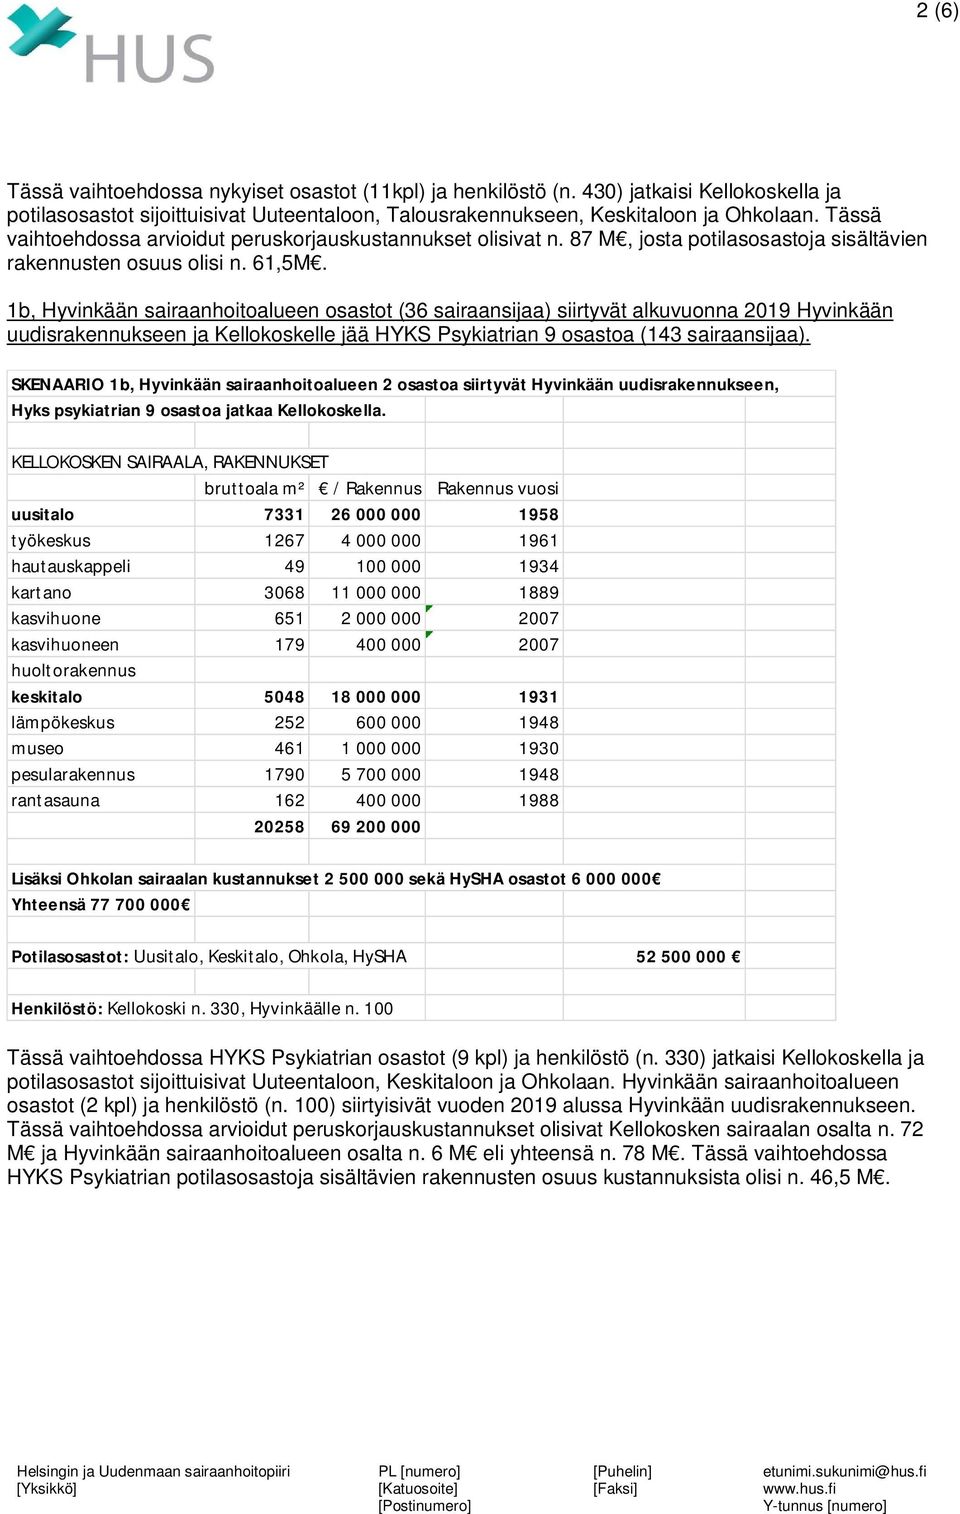 1b, Hyvinkään sairaanhoitoalueen osastot (36 sairaansijaa) siirtyvät alkuvuonna 2019 Hyvinkään uudisrakennukseen ja Kellokoskelle jää HYKS Psykiatrian 9 osastoa (143 sairaansijaa).